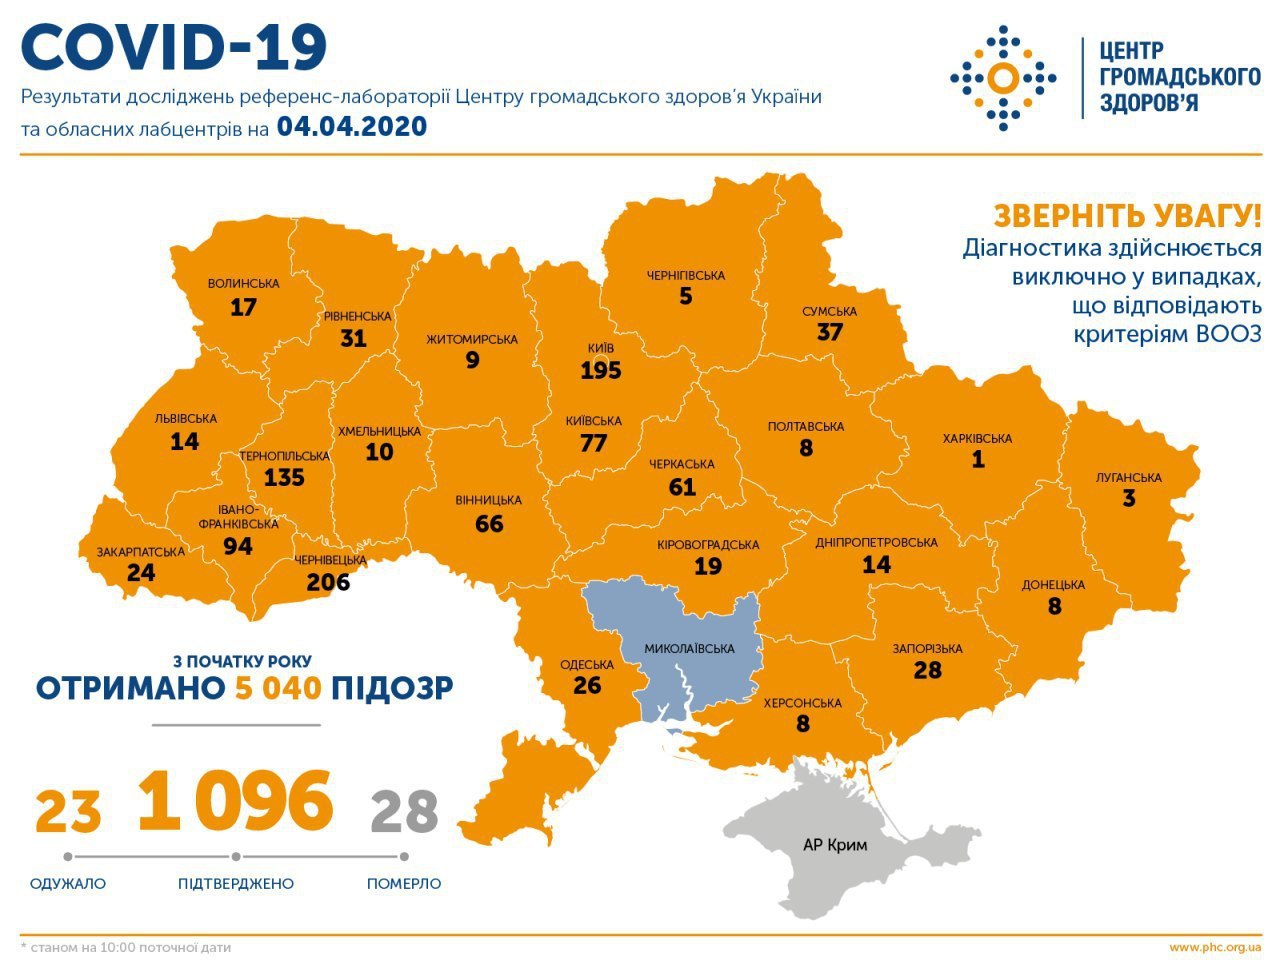 Коронавирус найден во всех областях Украины, кроме Николаевской.